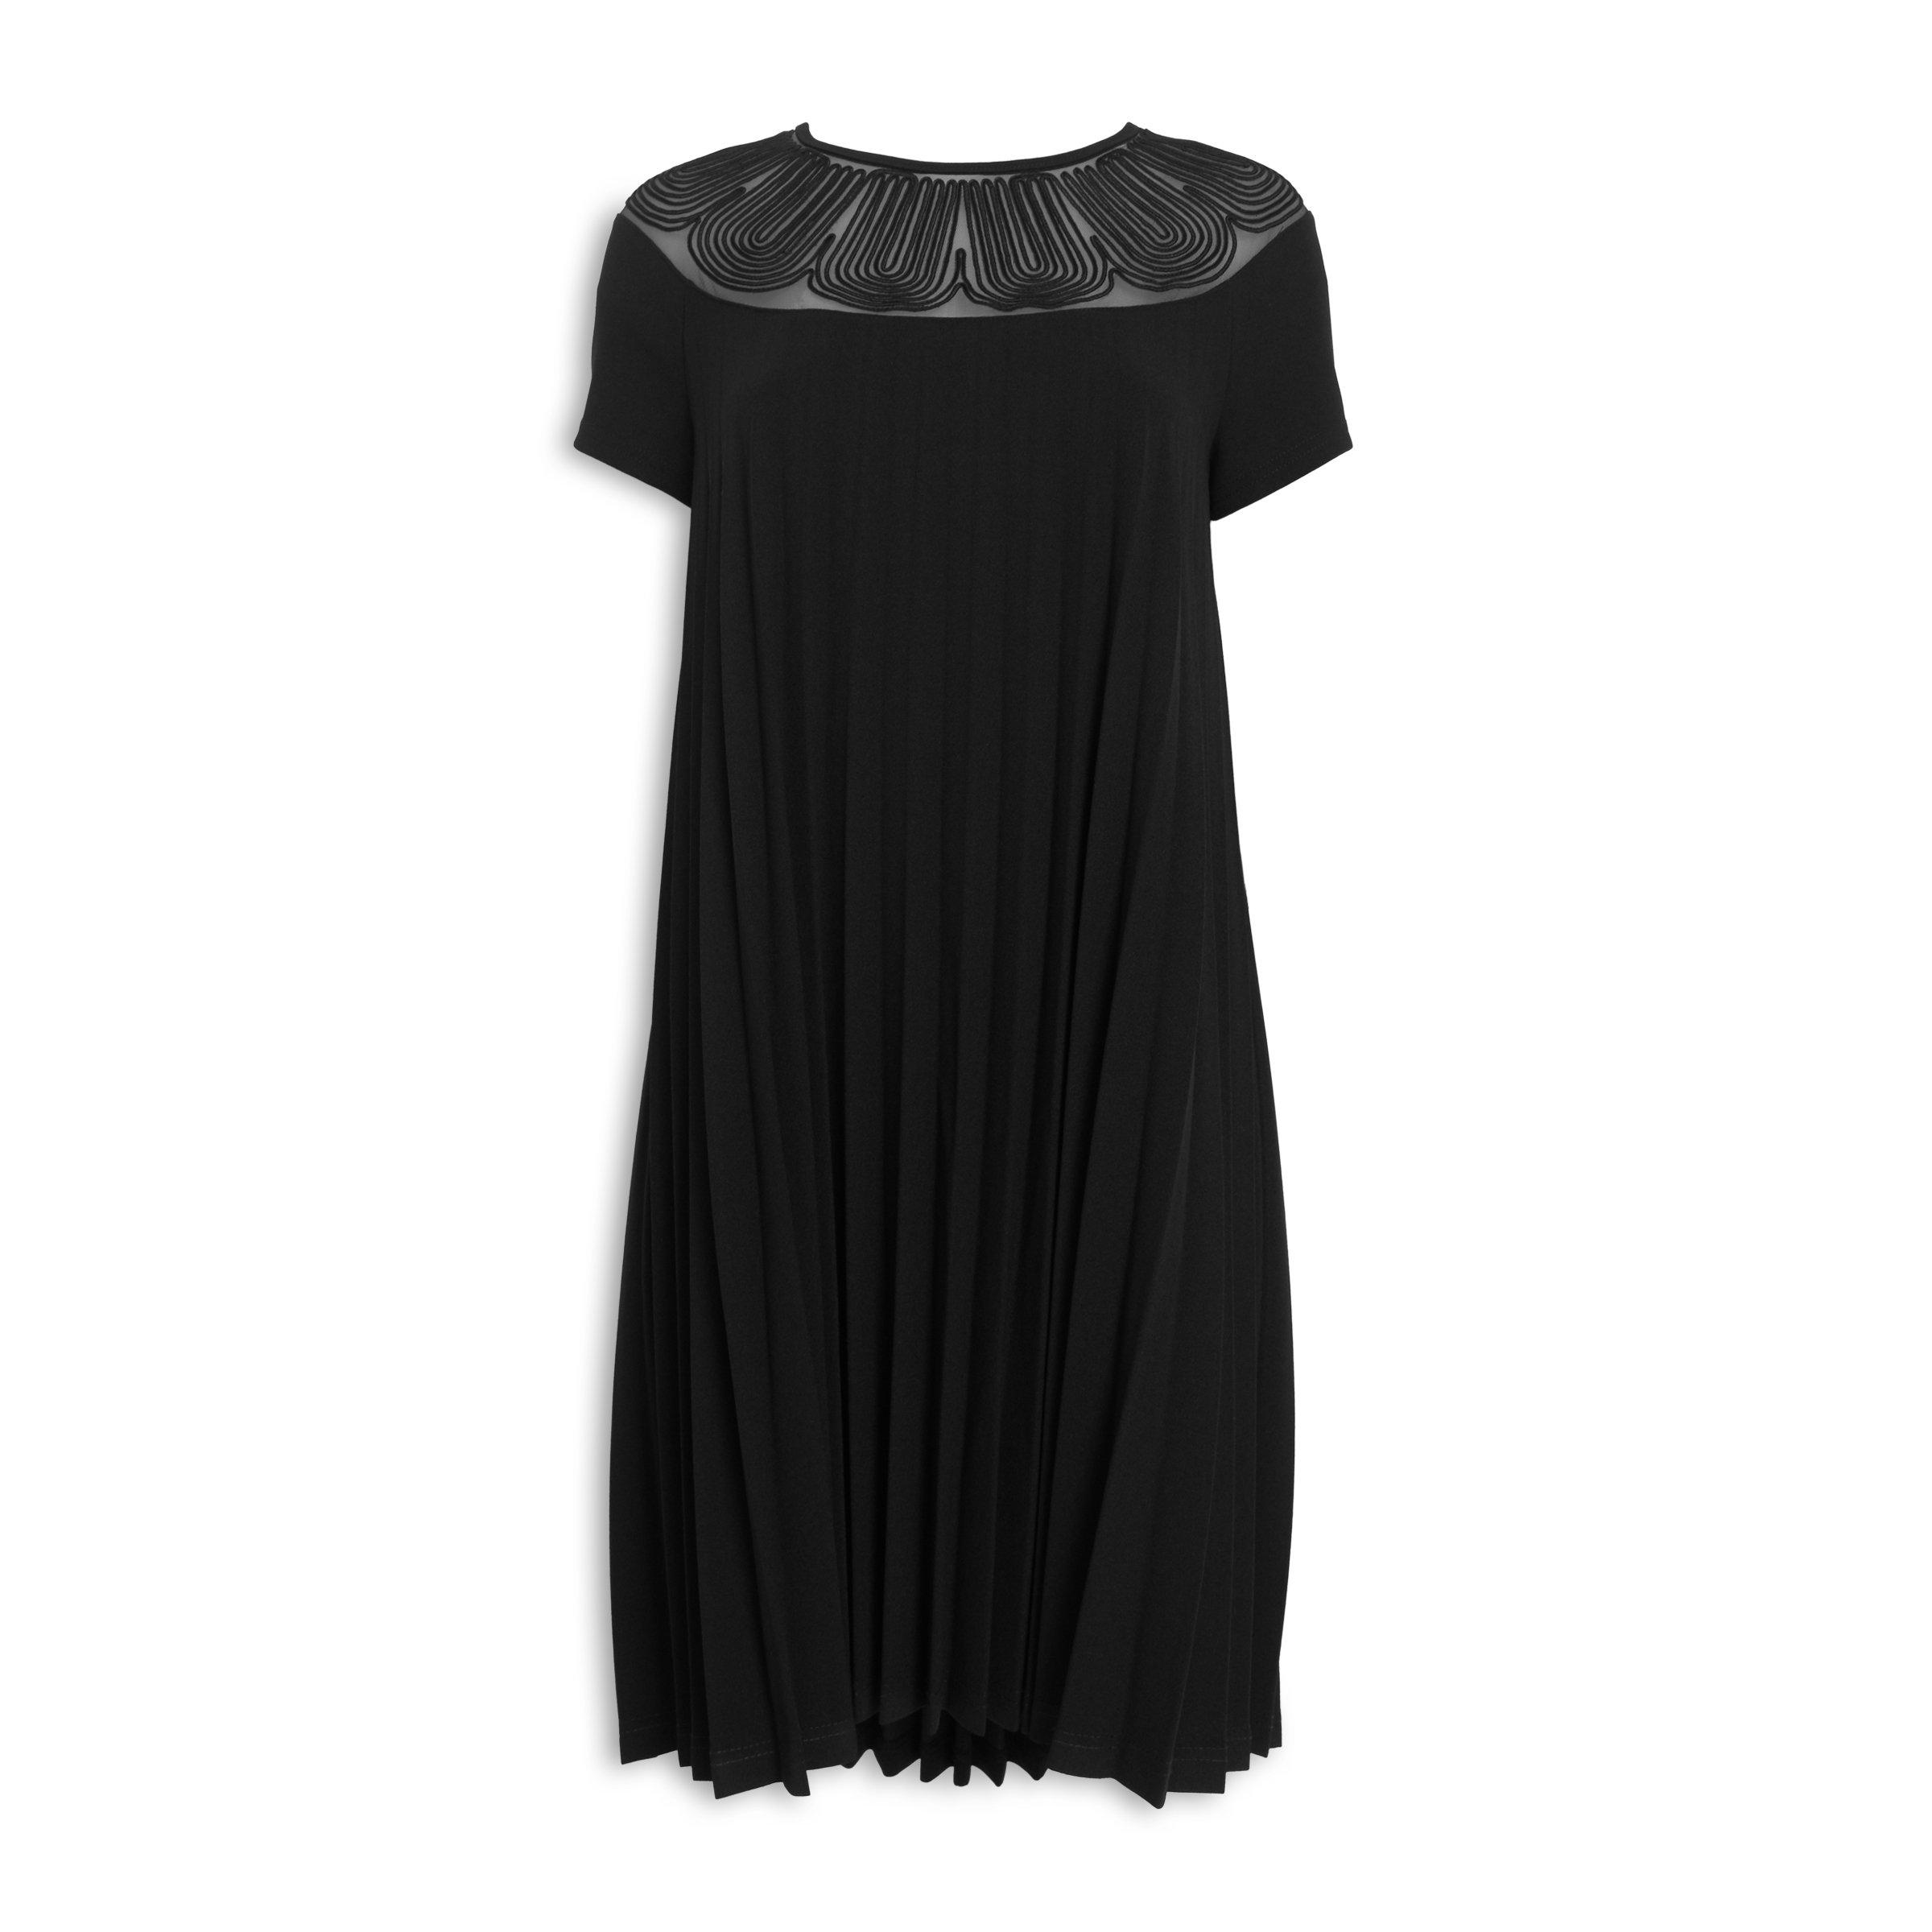 Buy Ginger Mary Black Cornelli Dress Online | Truworths